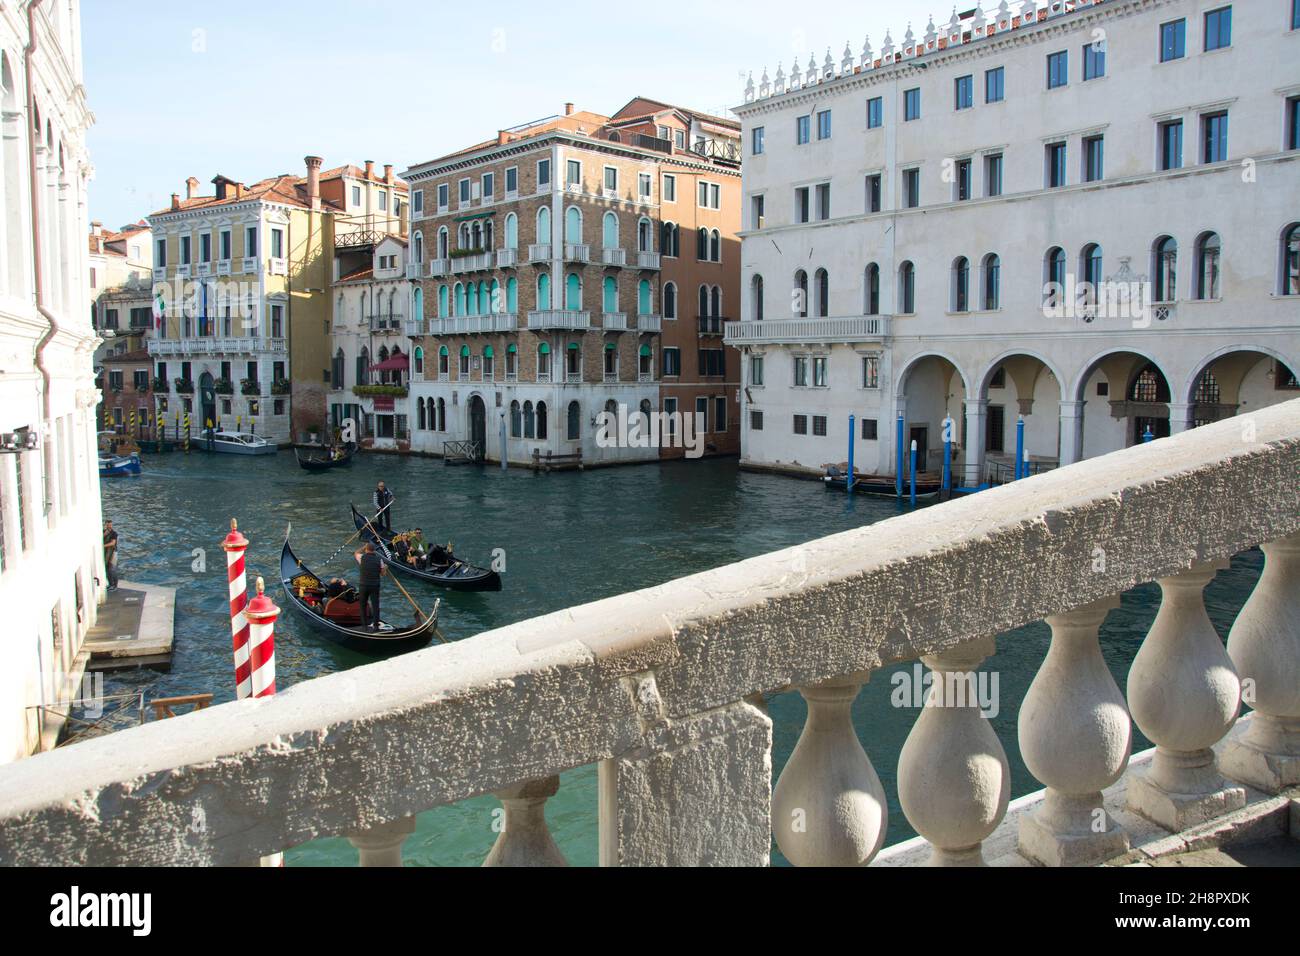 Eindrücke aus den Kanälen Venedigs Stock Photo